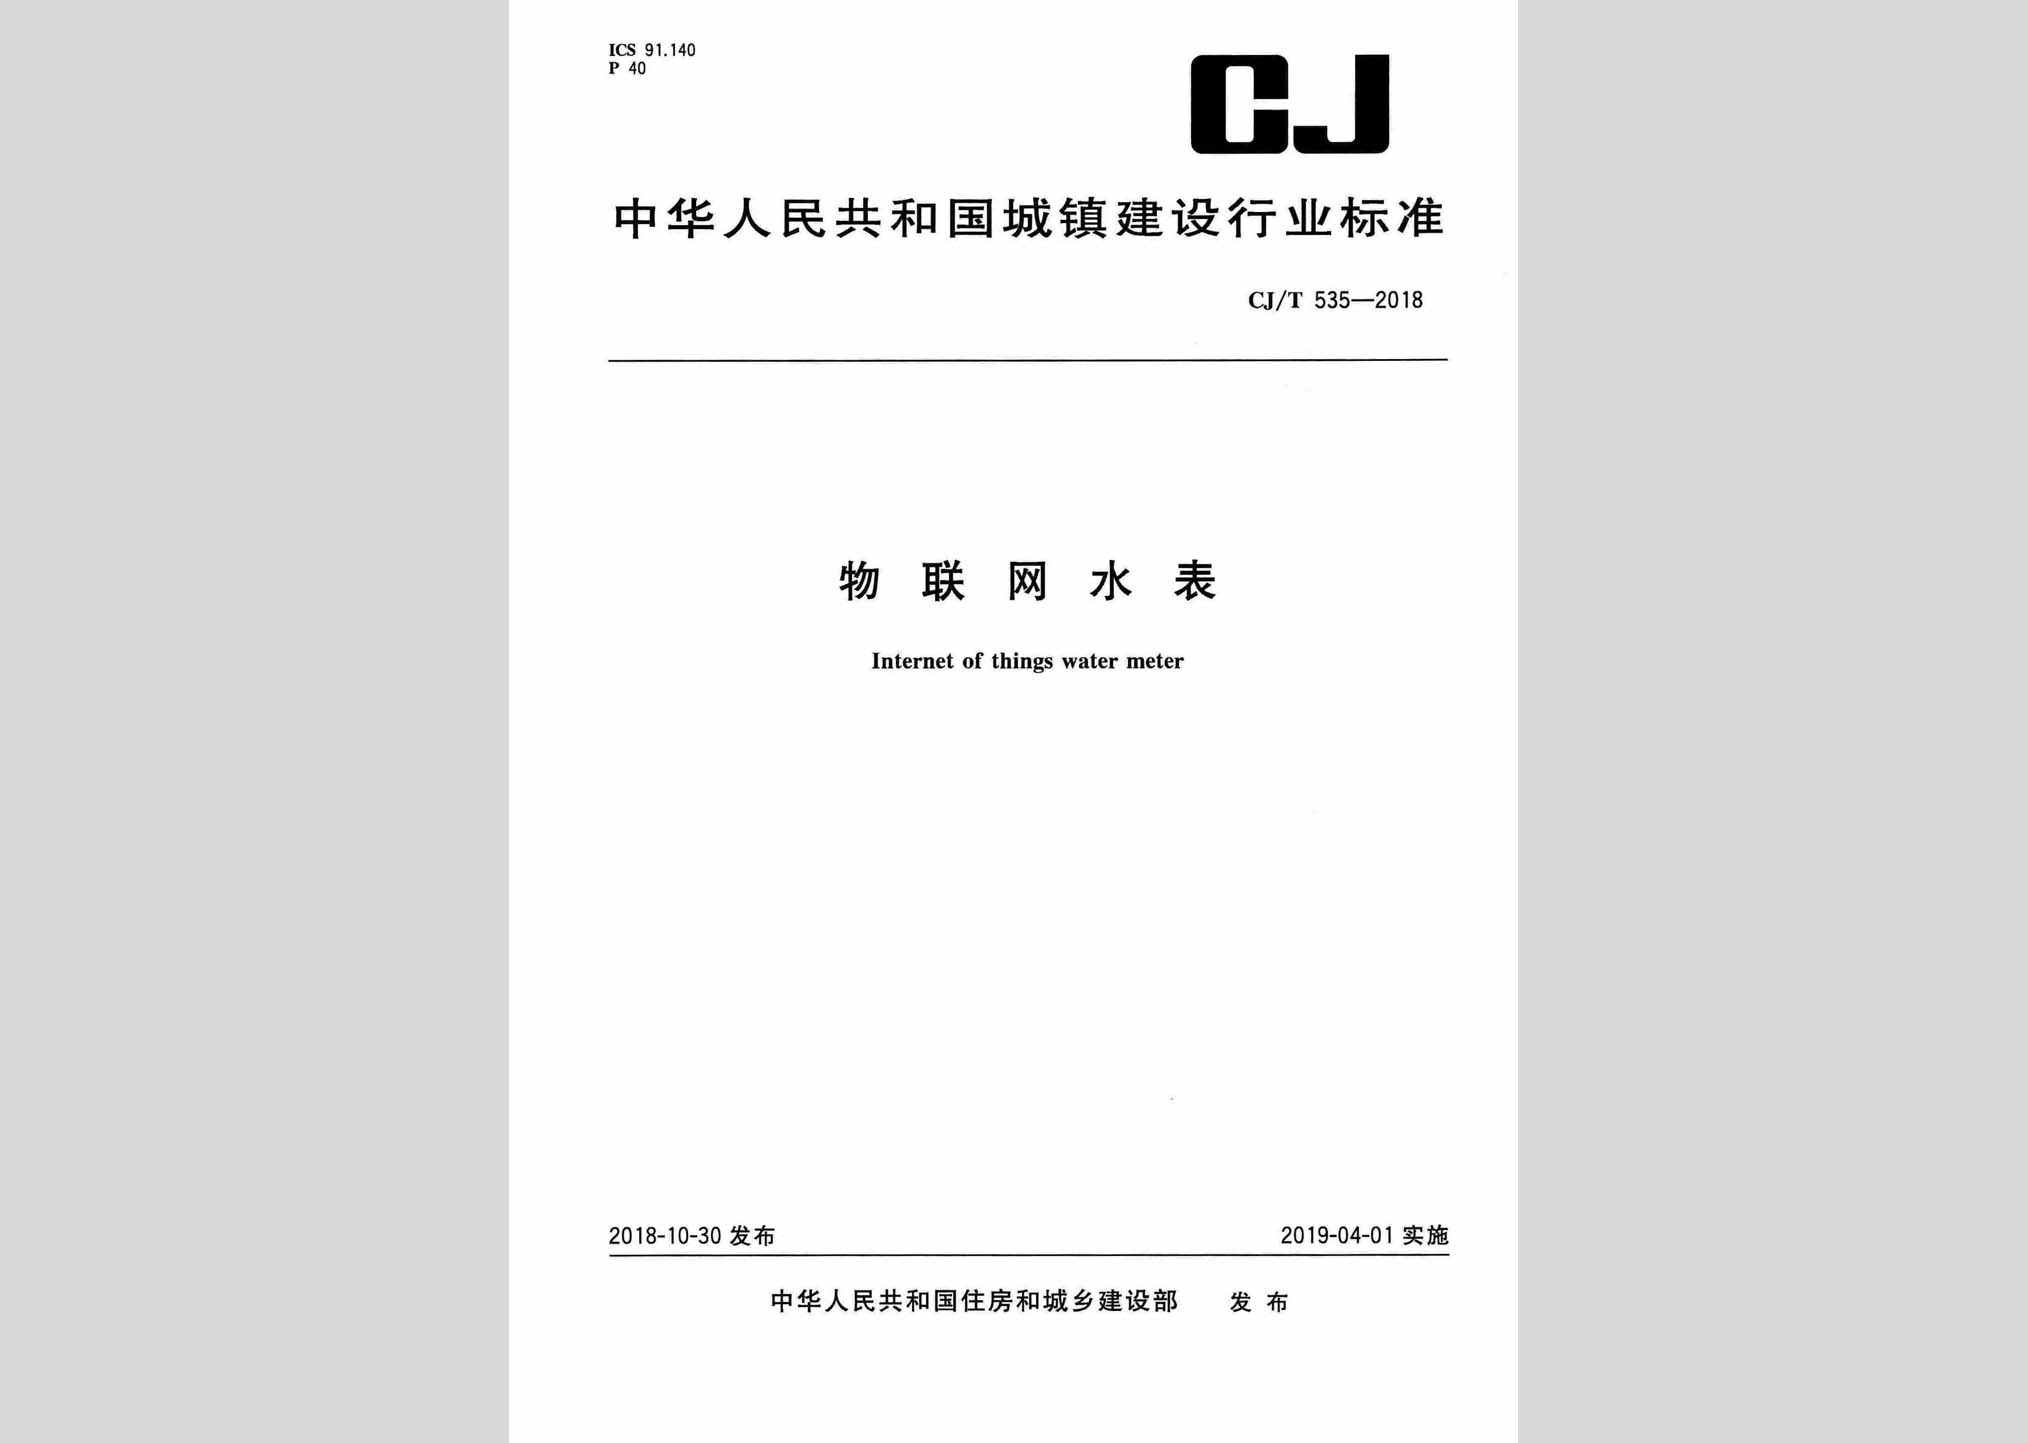 CJ/T535-2018：物联网水表